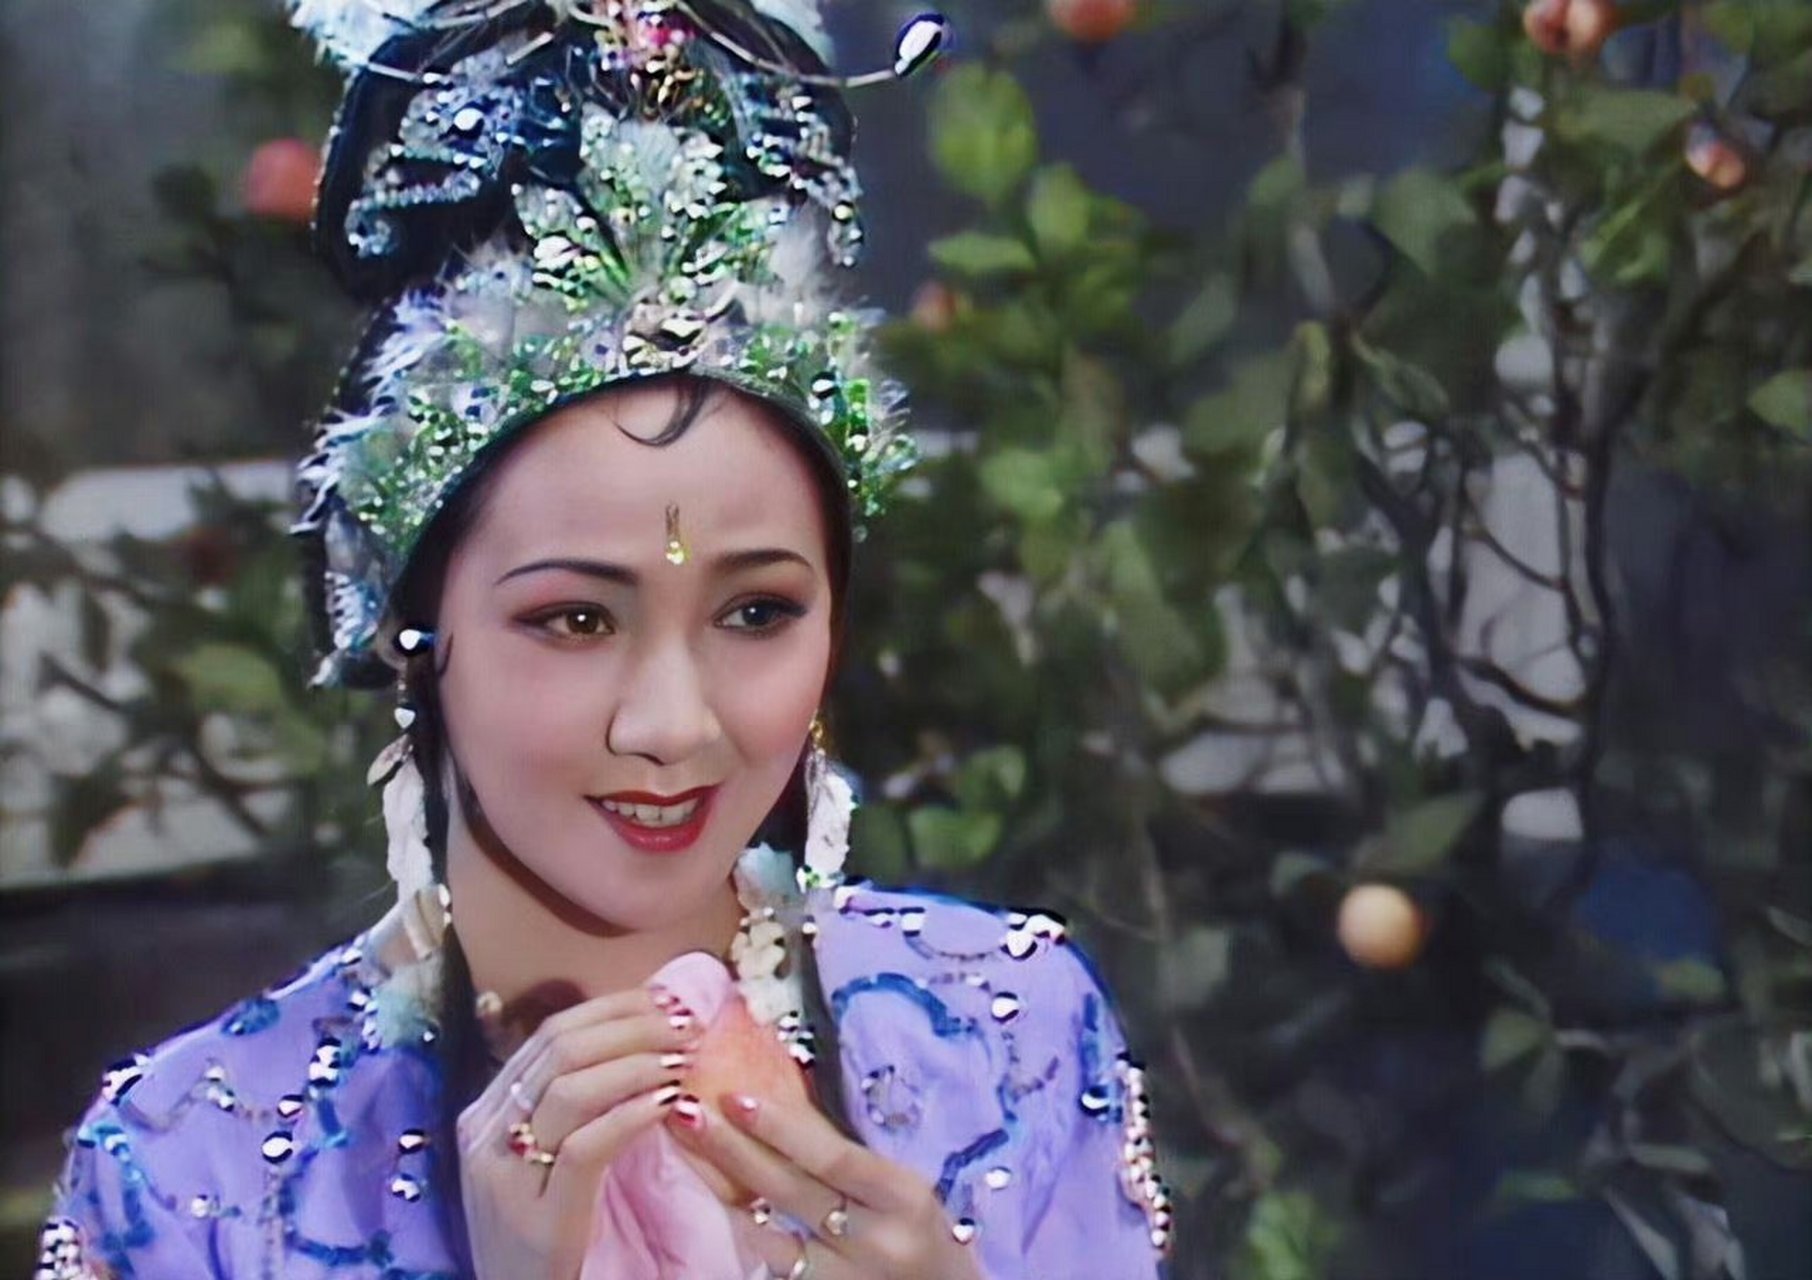 86版《西游记》高清剧照美女系列